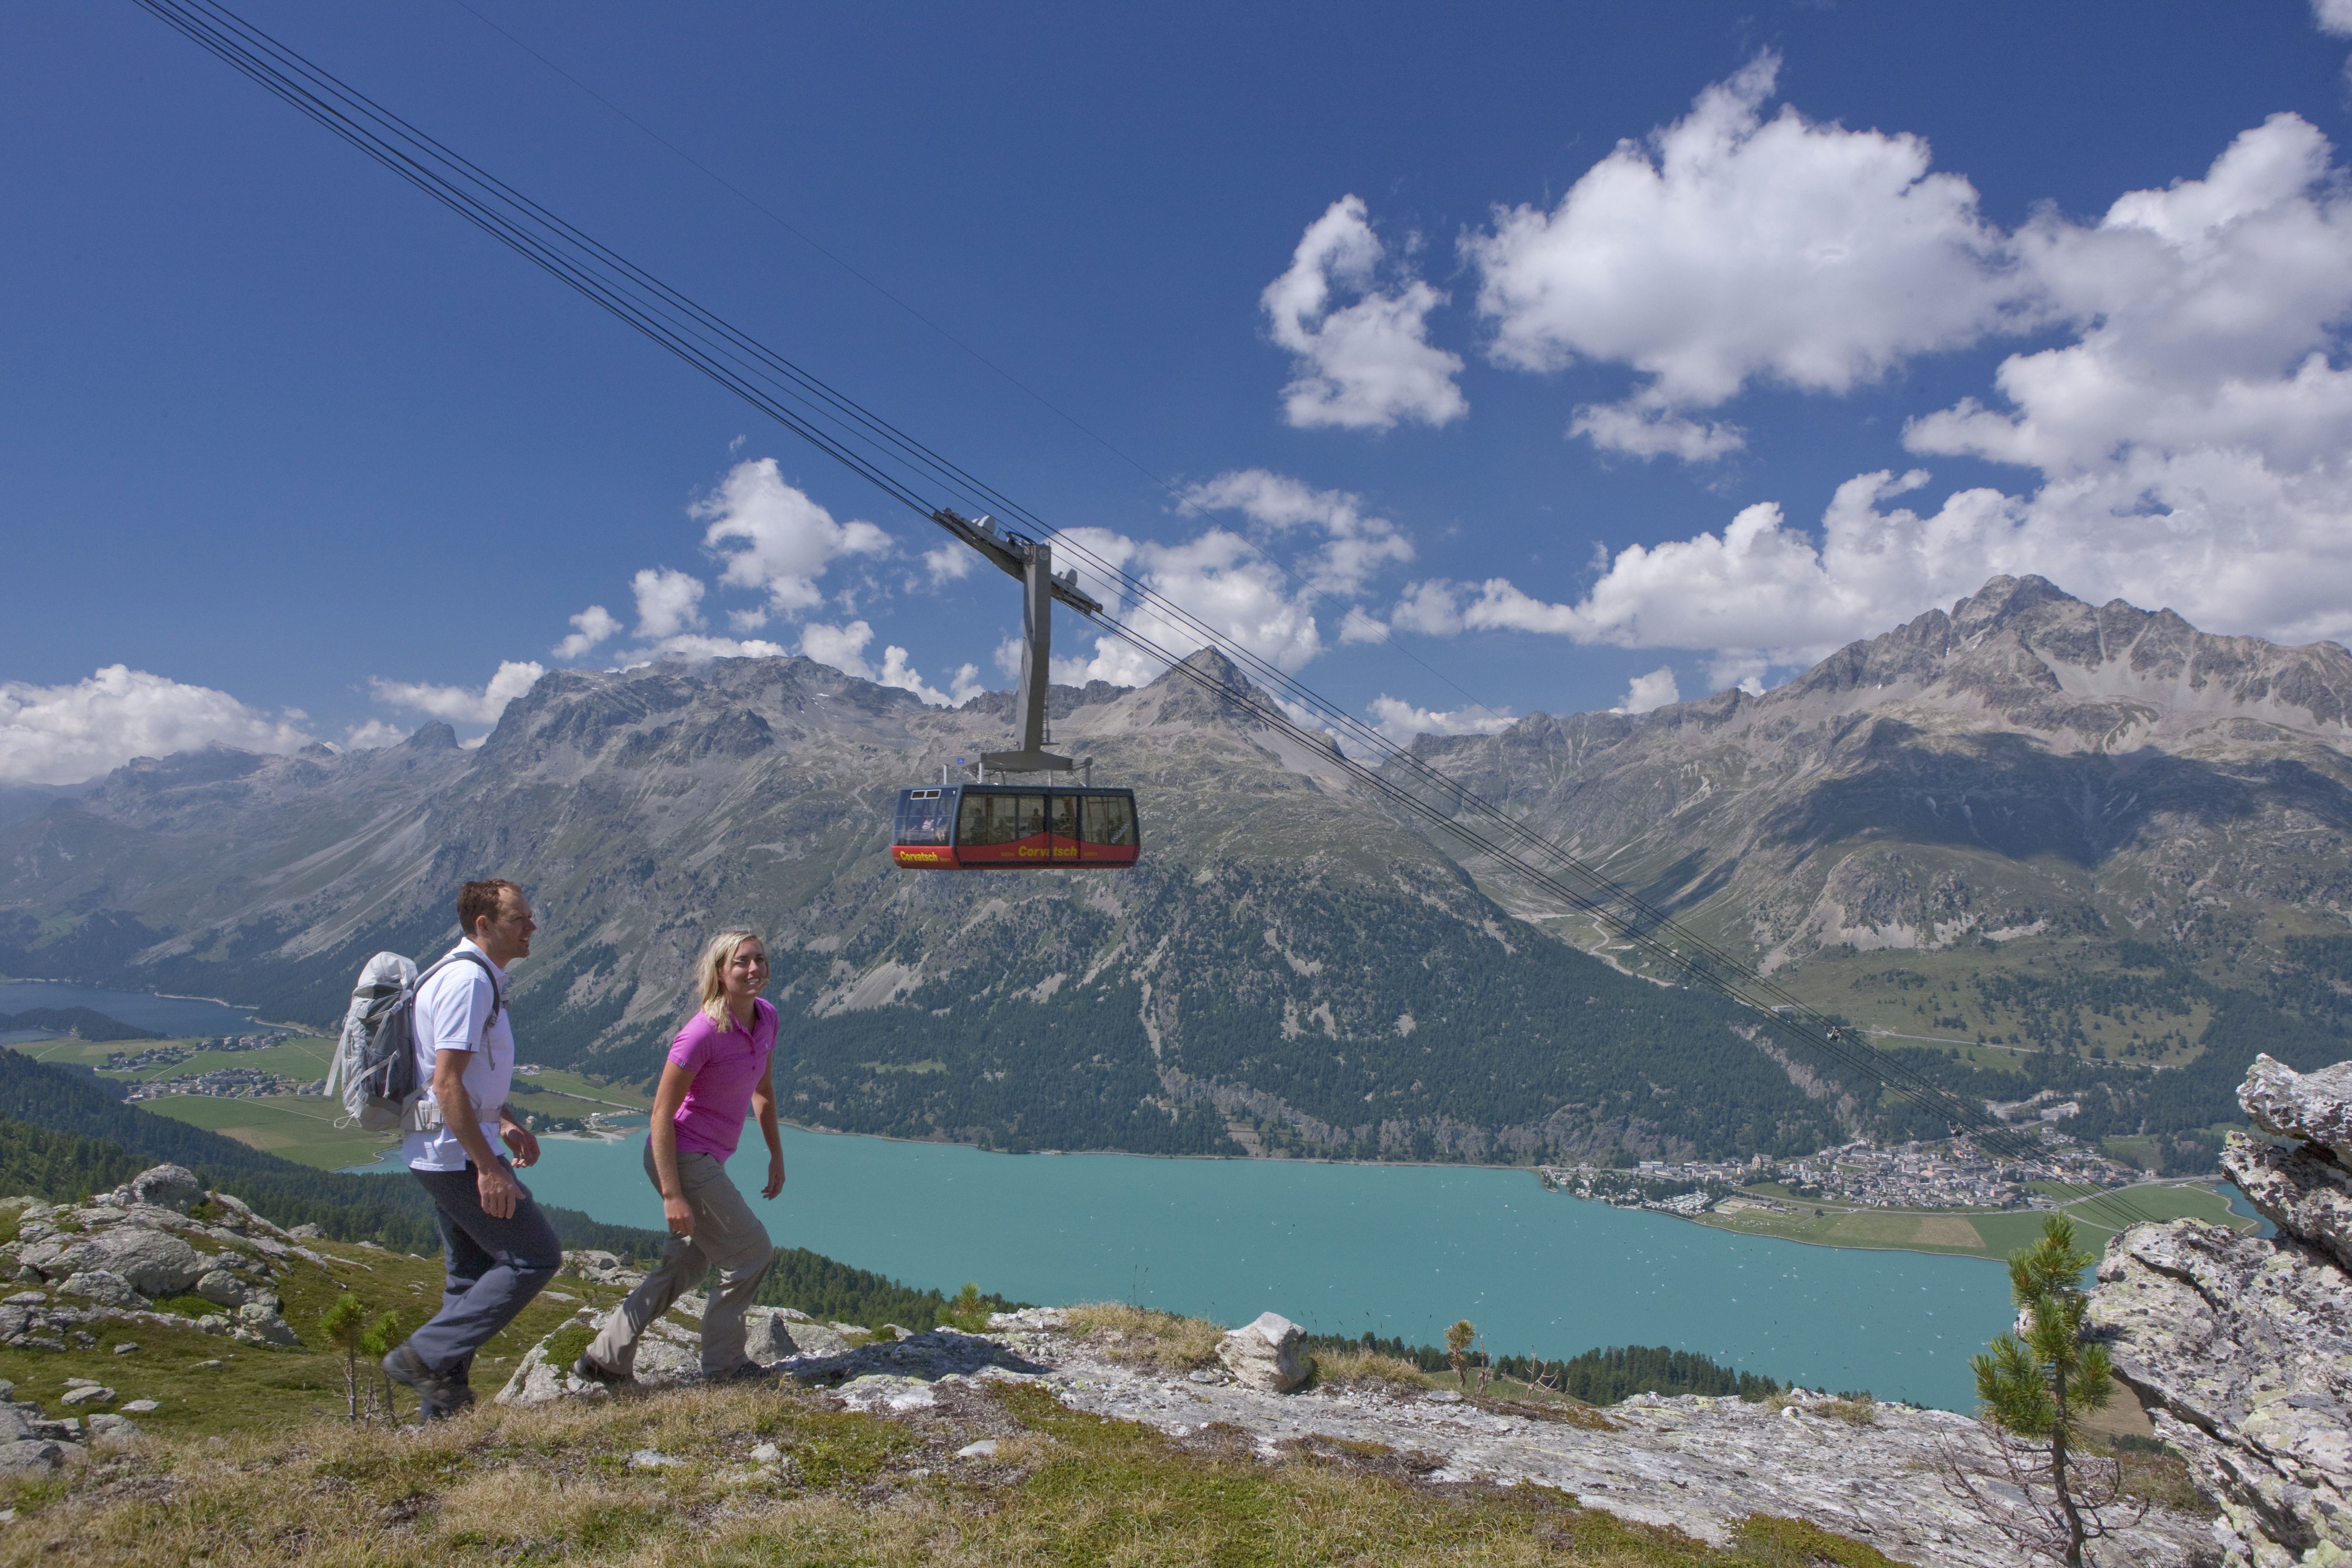 Vacanza attiva in Engadina, tra laghi e cime alpine: le offerte